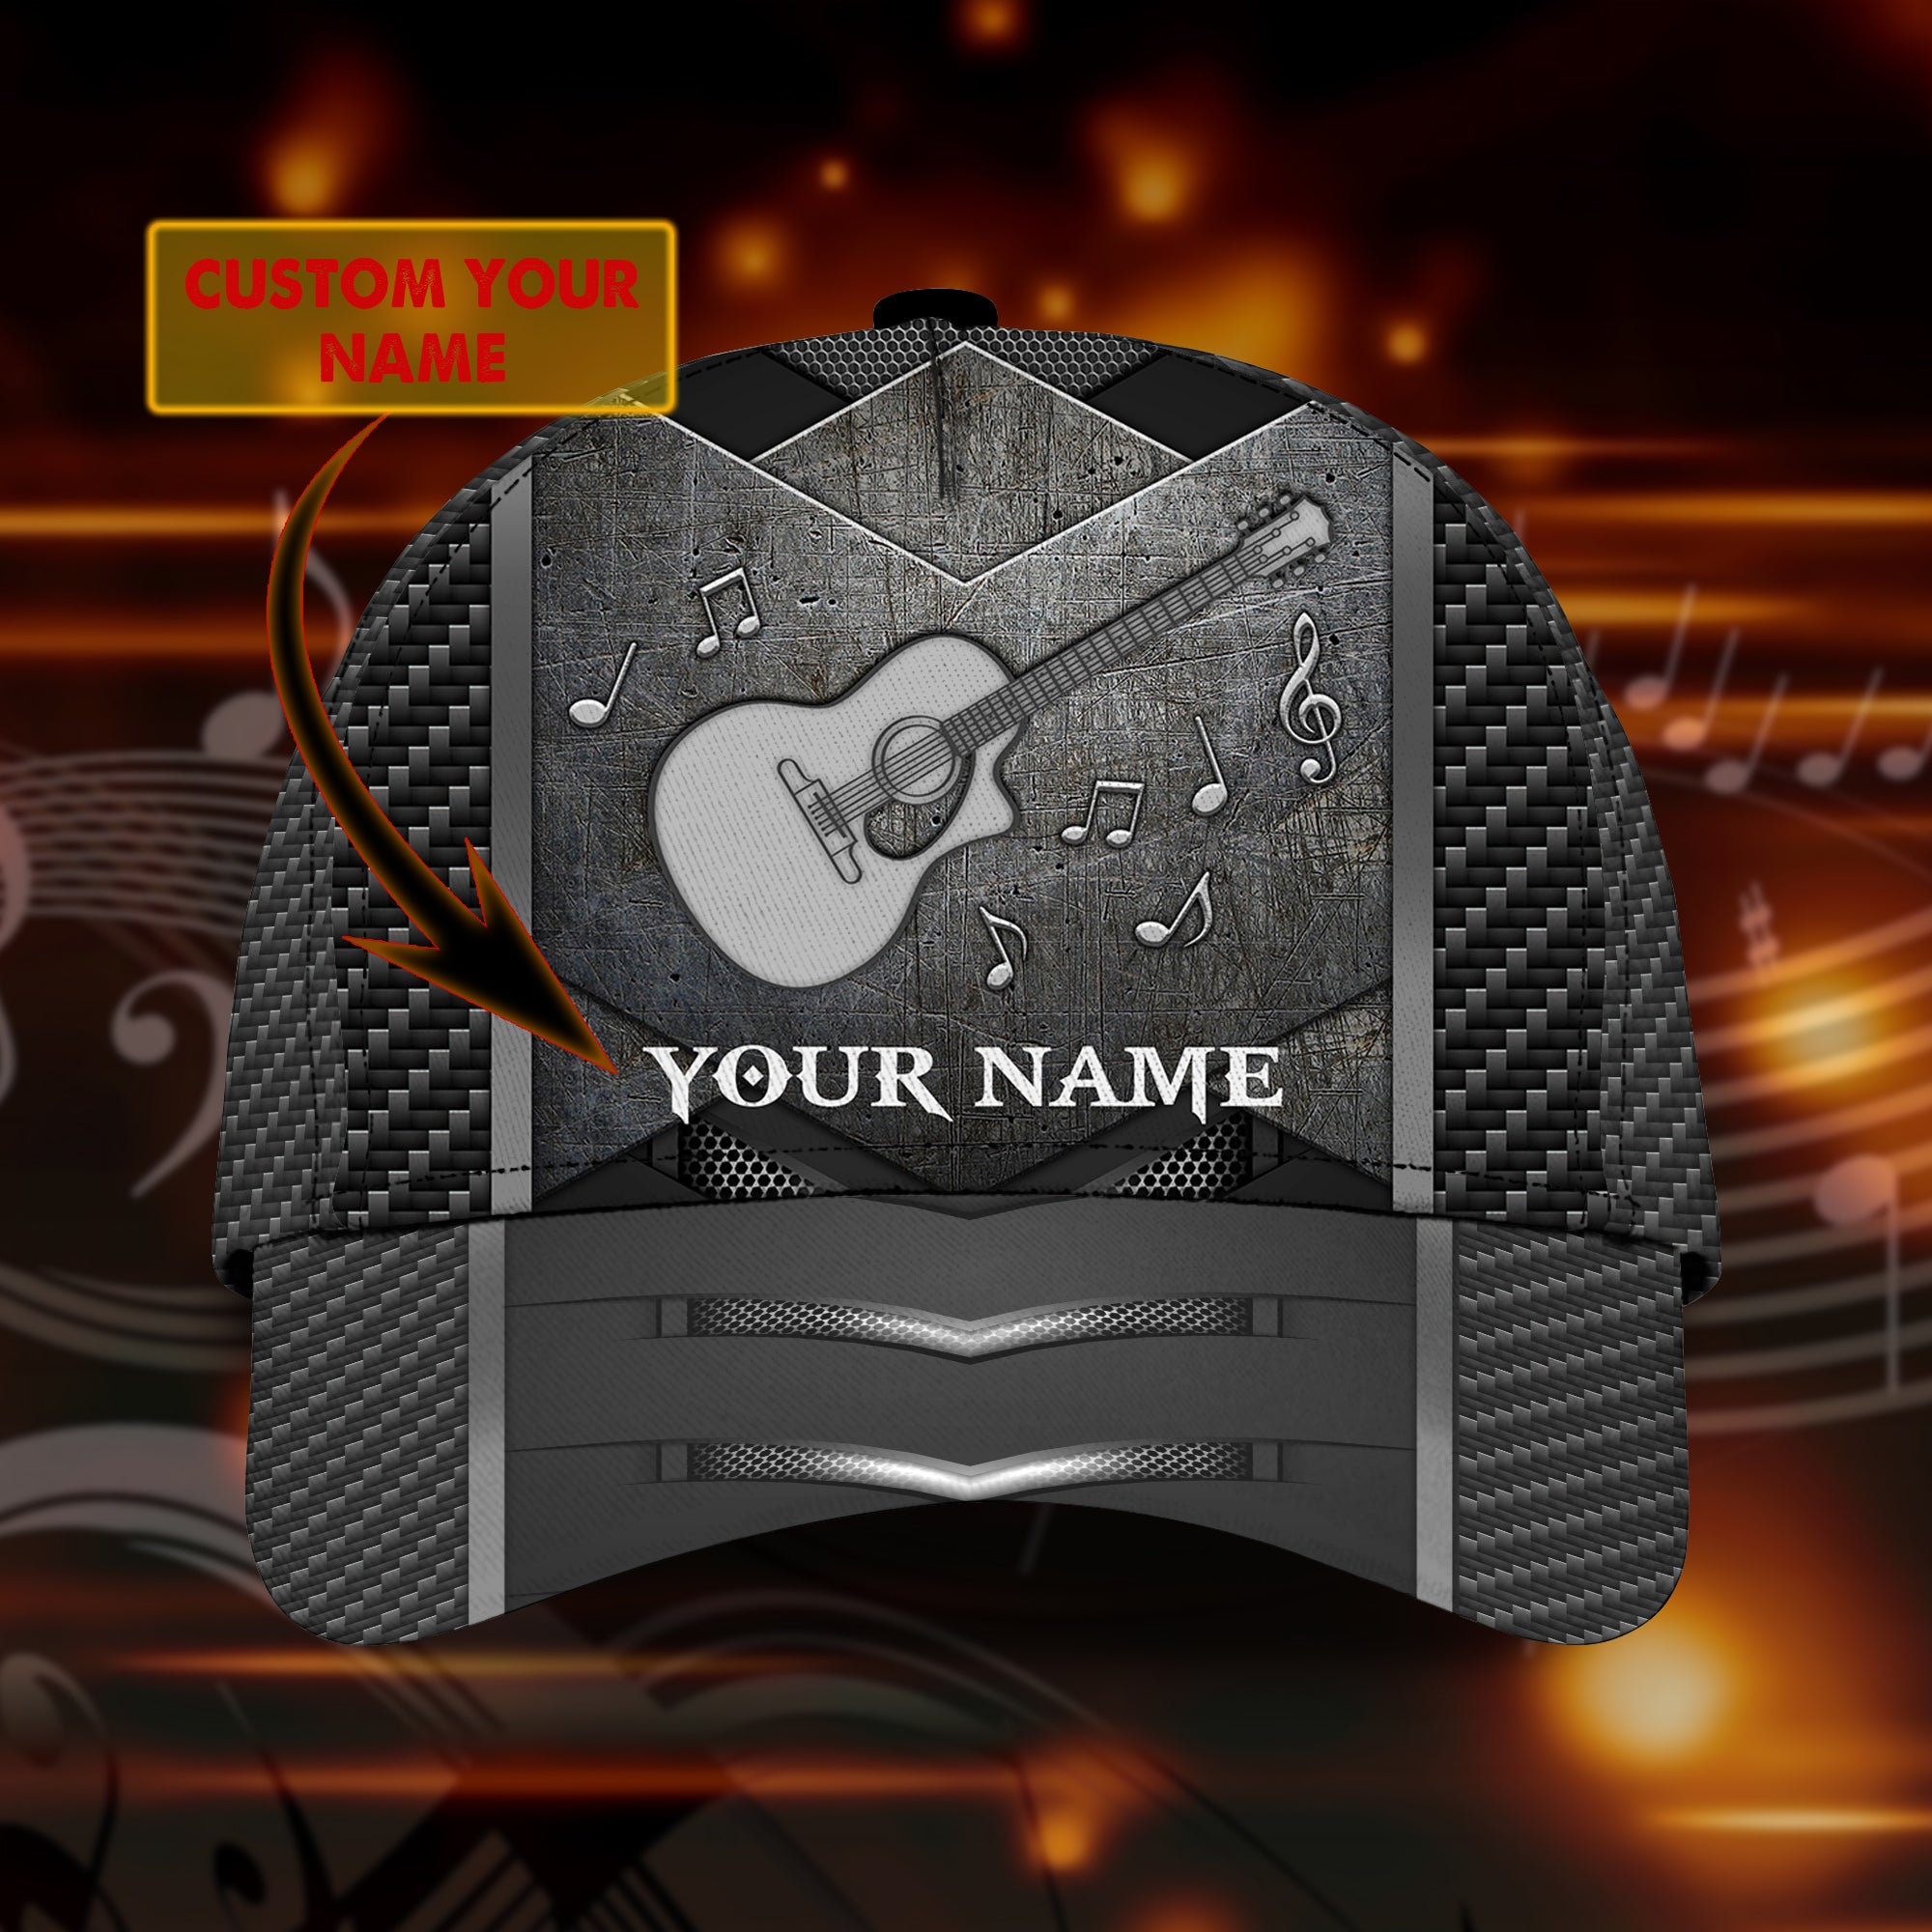 Guitar - Personalized Name Cap - Nia94